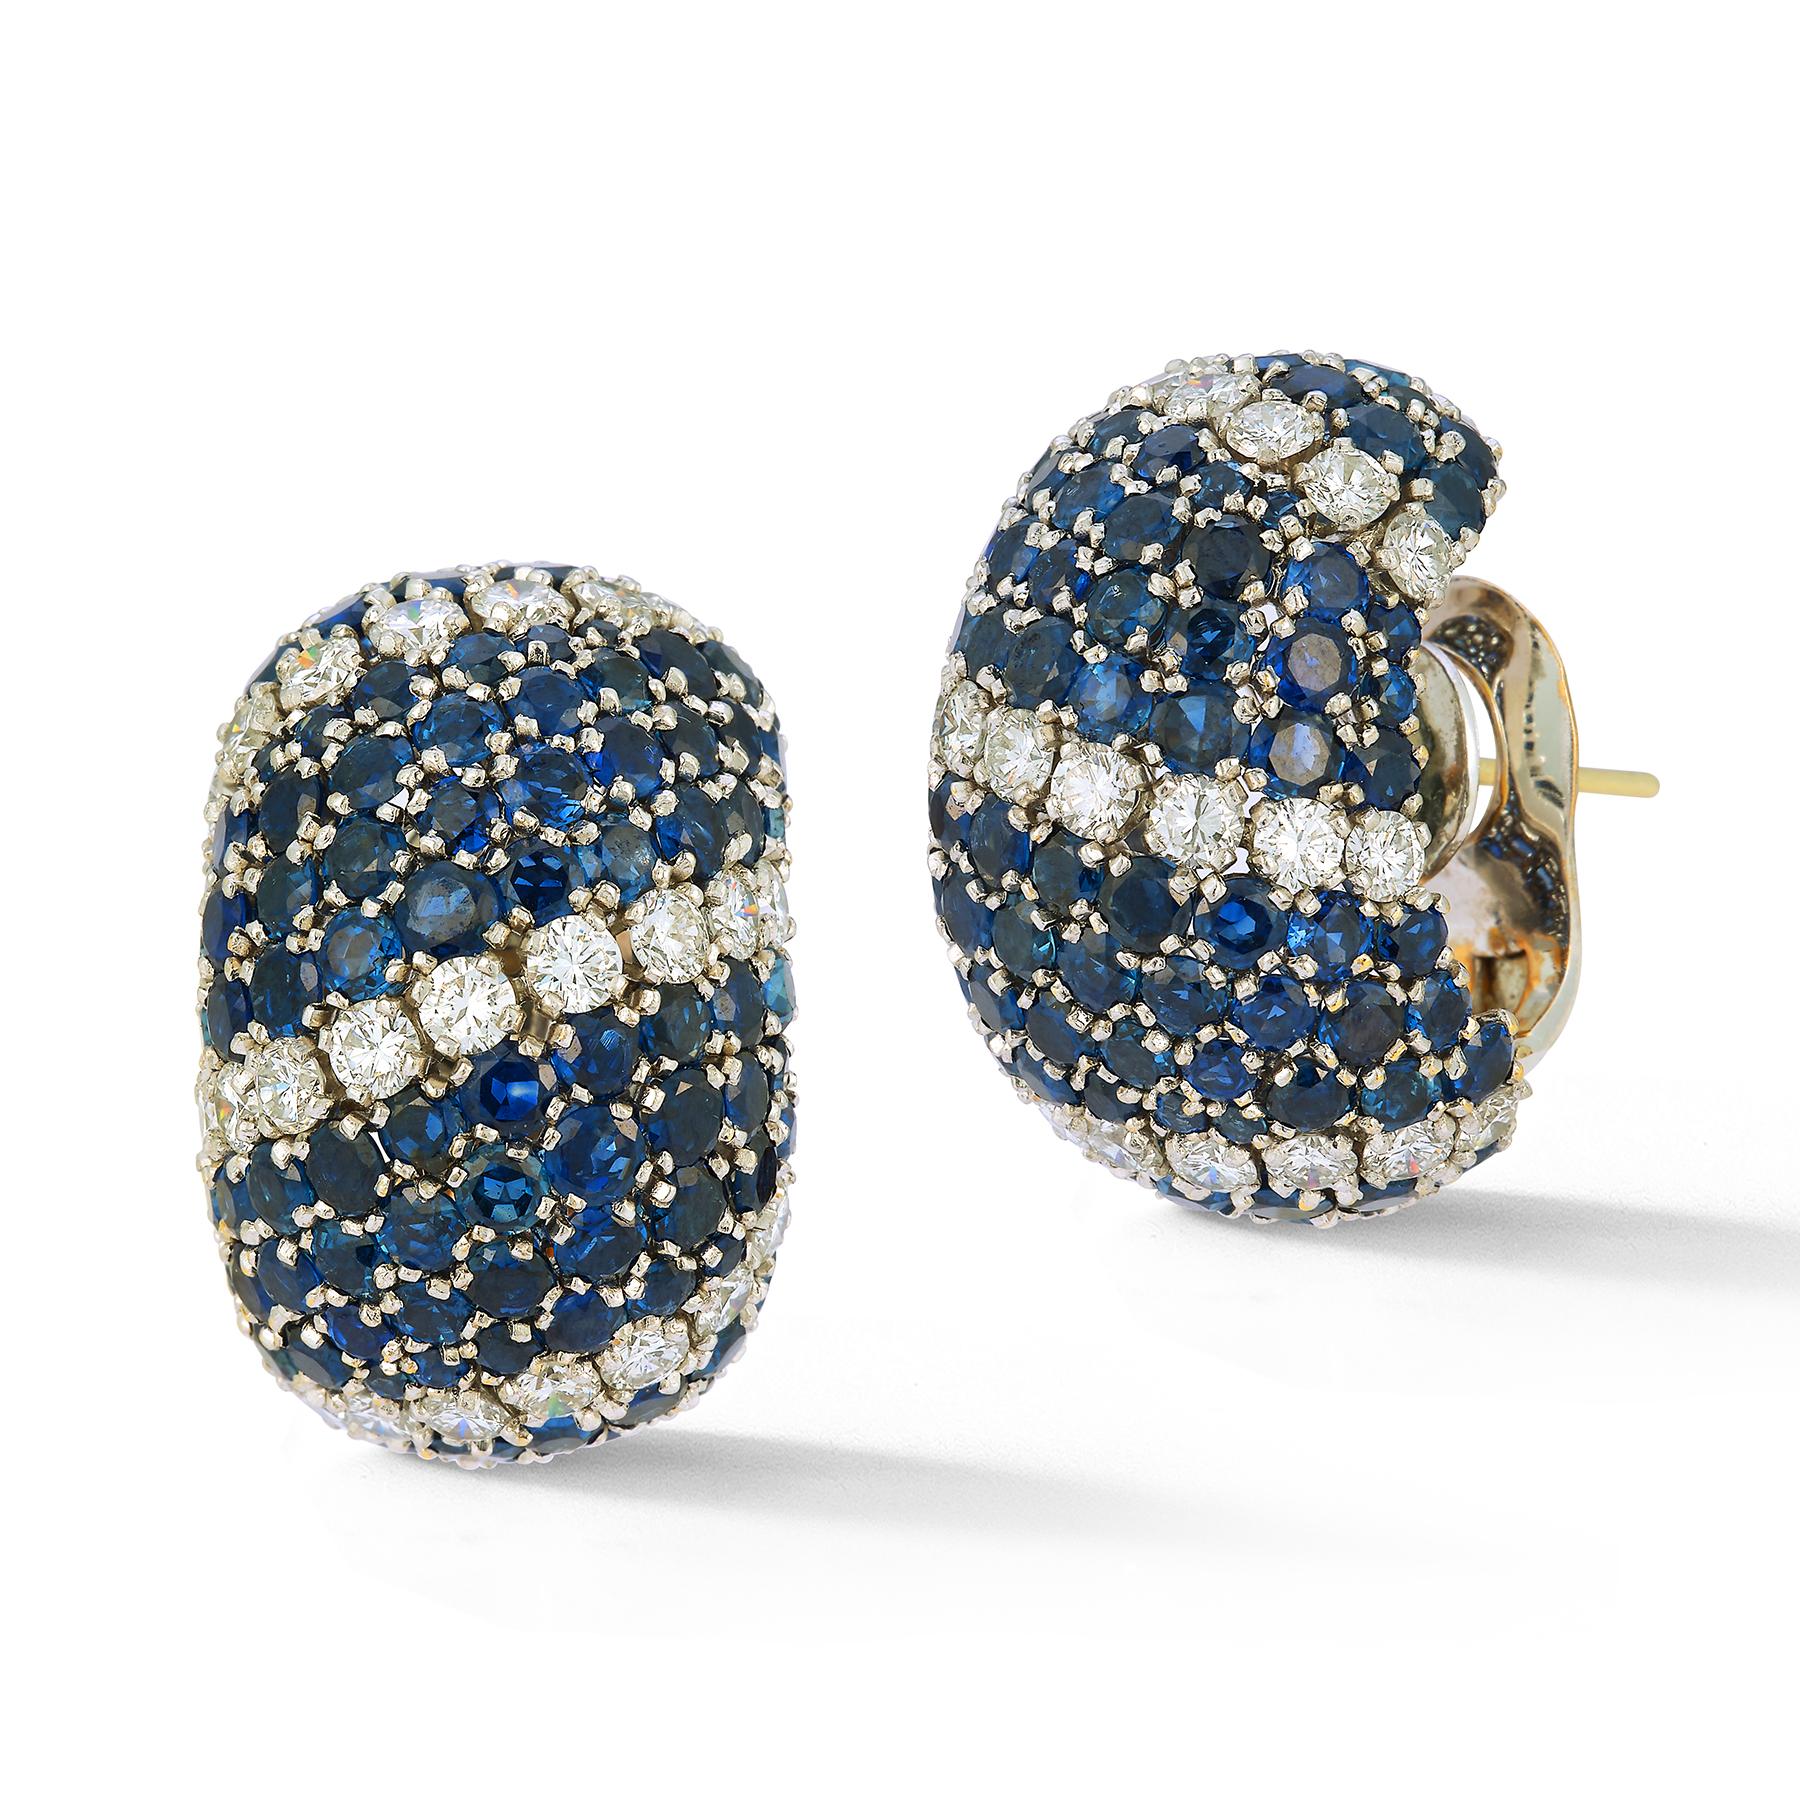 Van Cleef & Arpels - Boucles d'oreilles saphir et diamant

Saphirs de taille ronde et diamants sertis en or blanc 18 carats.

Mesures : 1